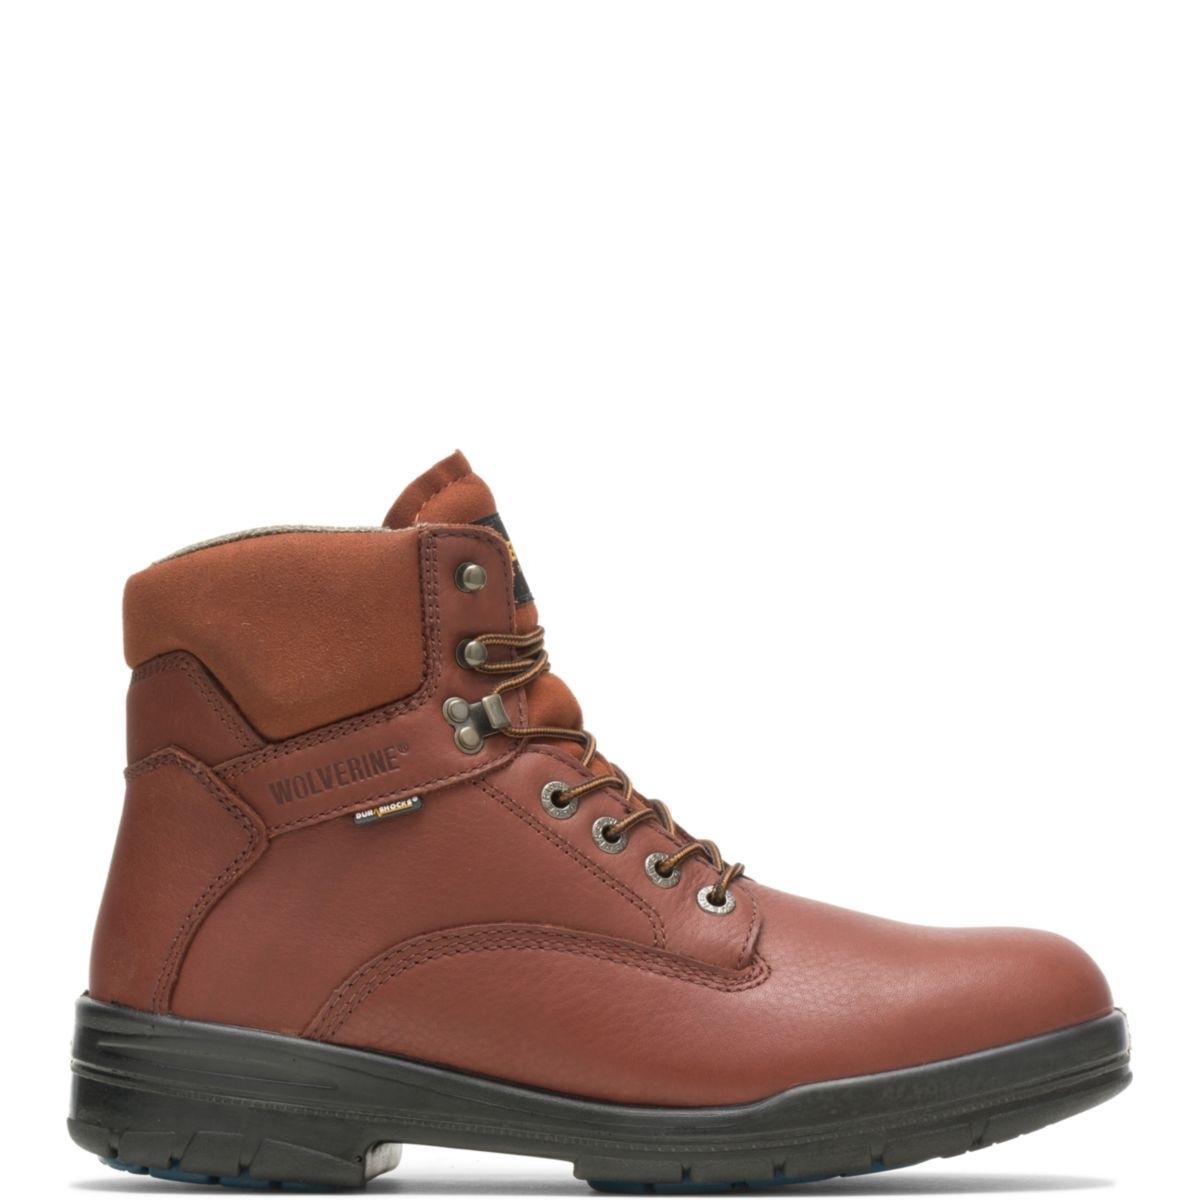 WOLVERINE Men's 6 DuraShocksÂ® Steel Toe Direct-Attach Work Boot Brown - W03120 BROWN - BROWN, 9.5